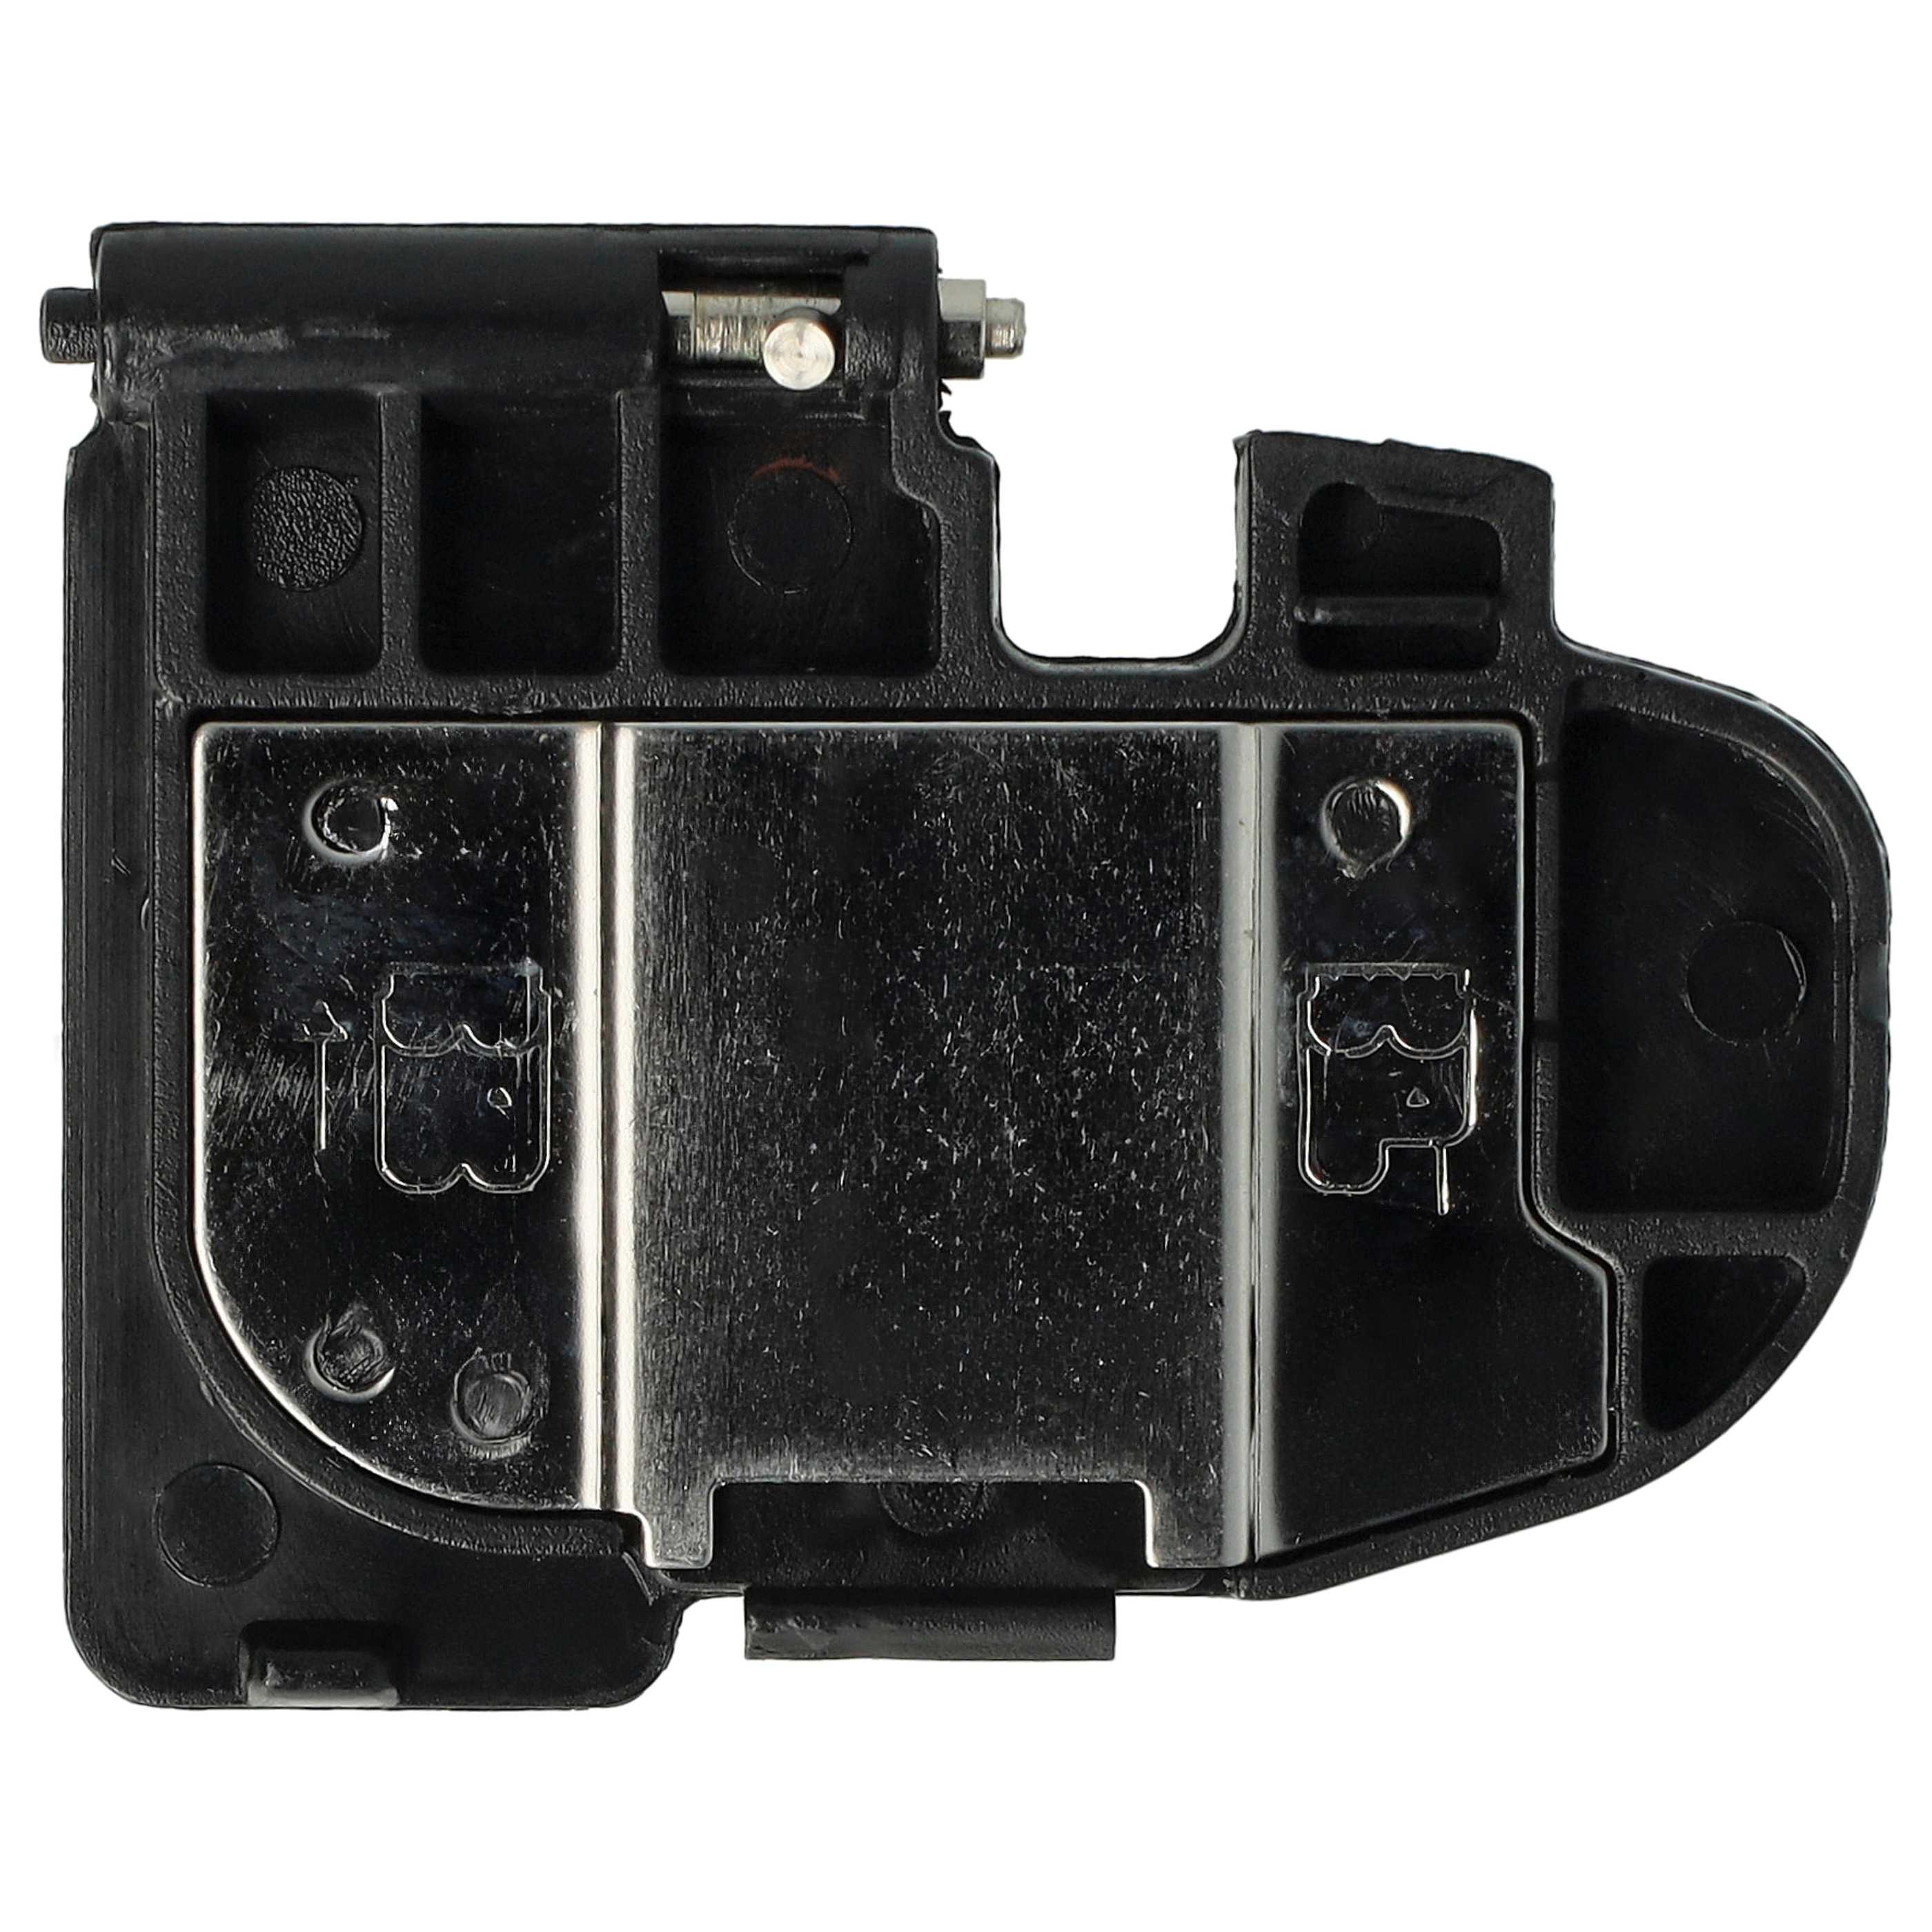 Copri-batteria per fotocamera, battery grip Canon EOS 5D